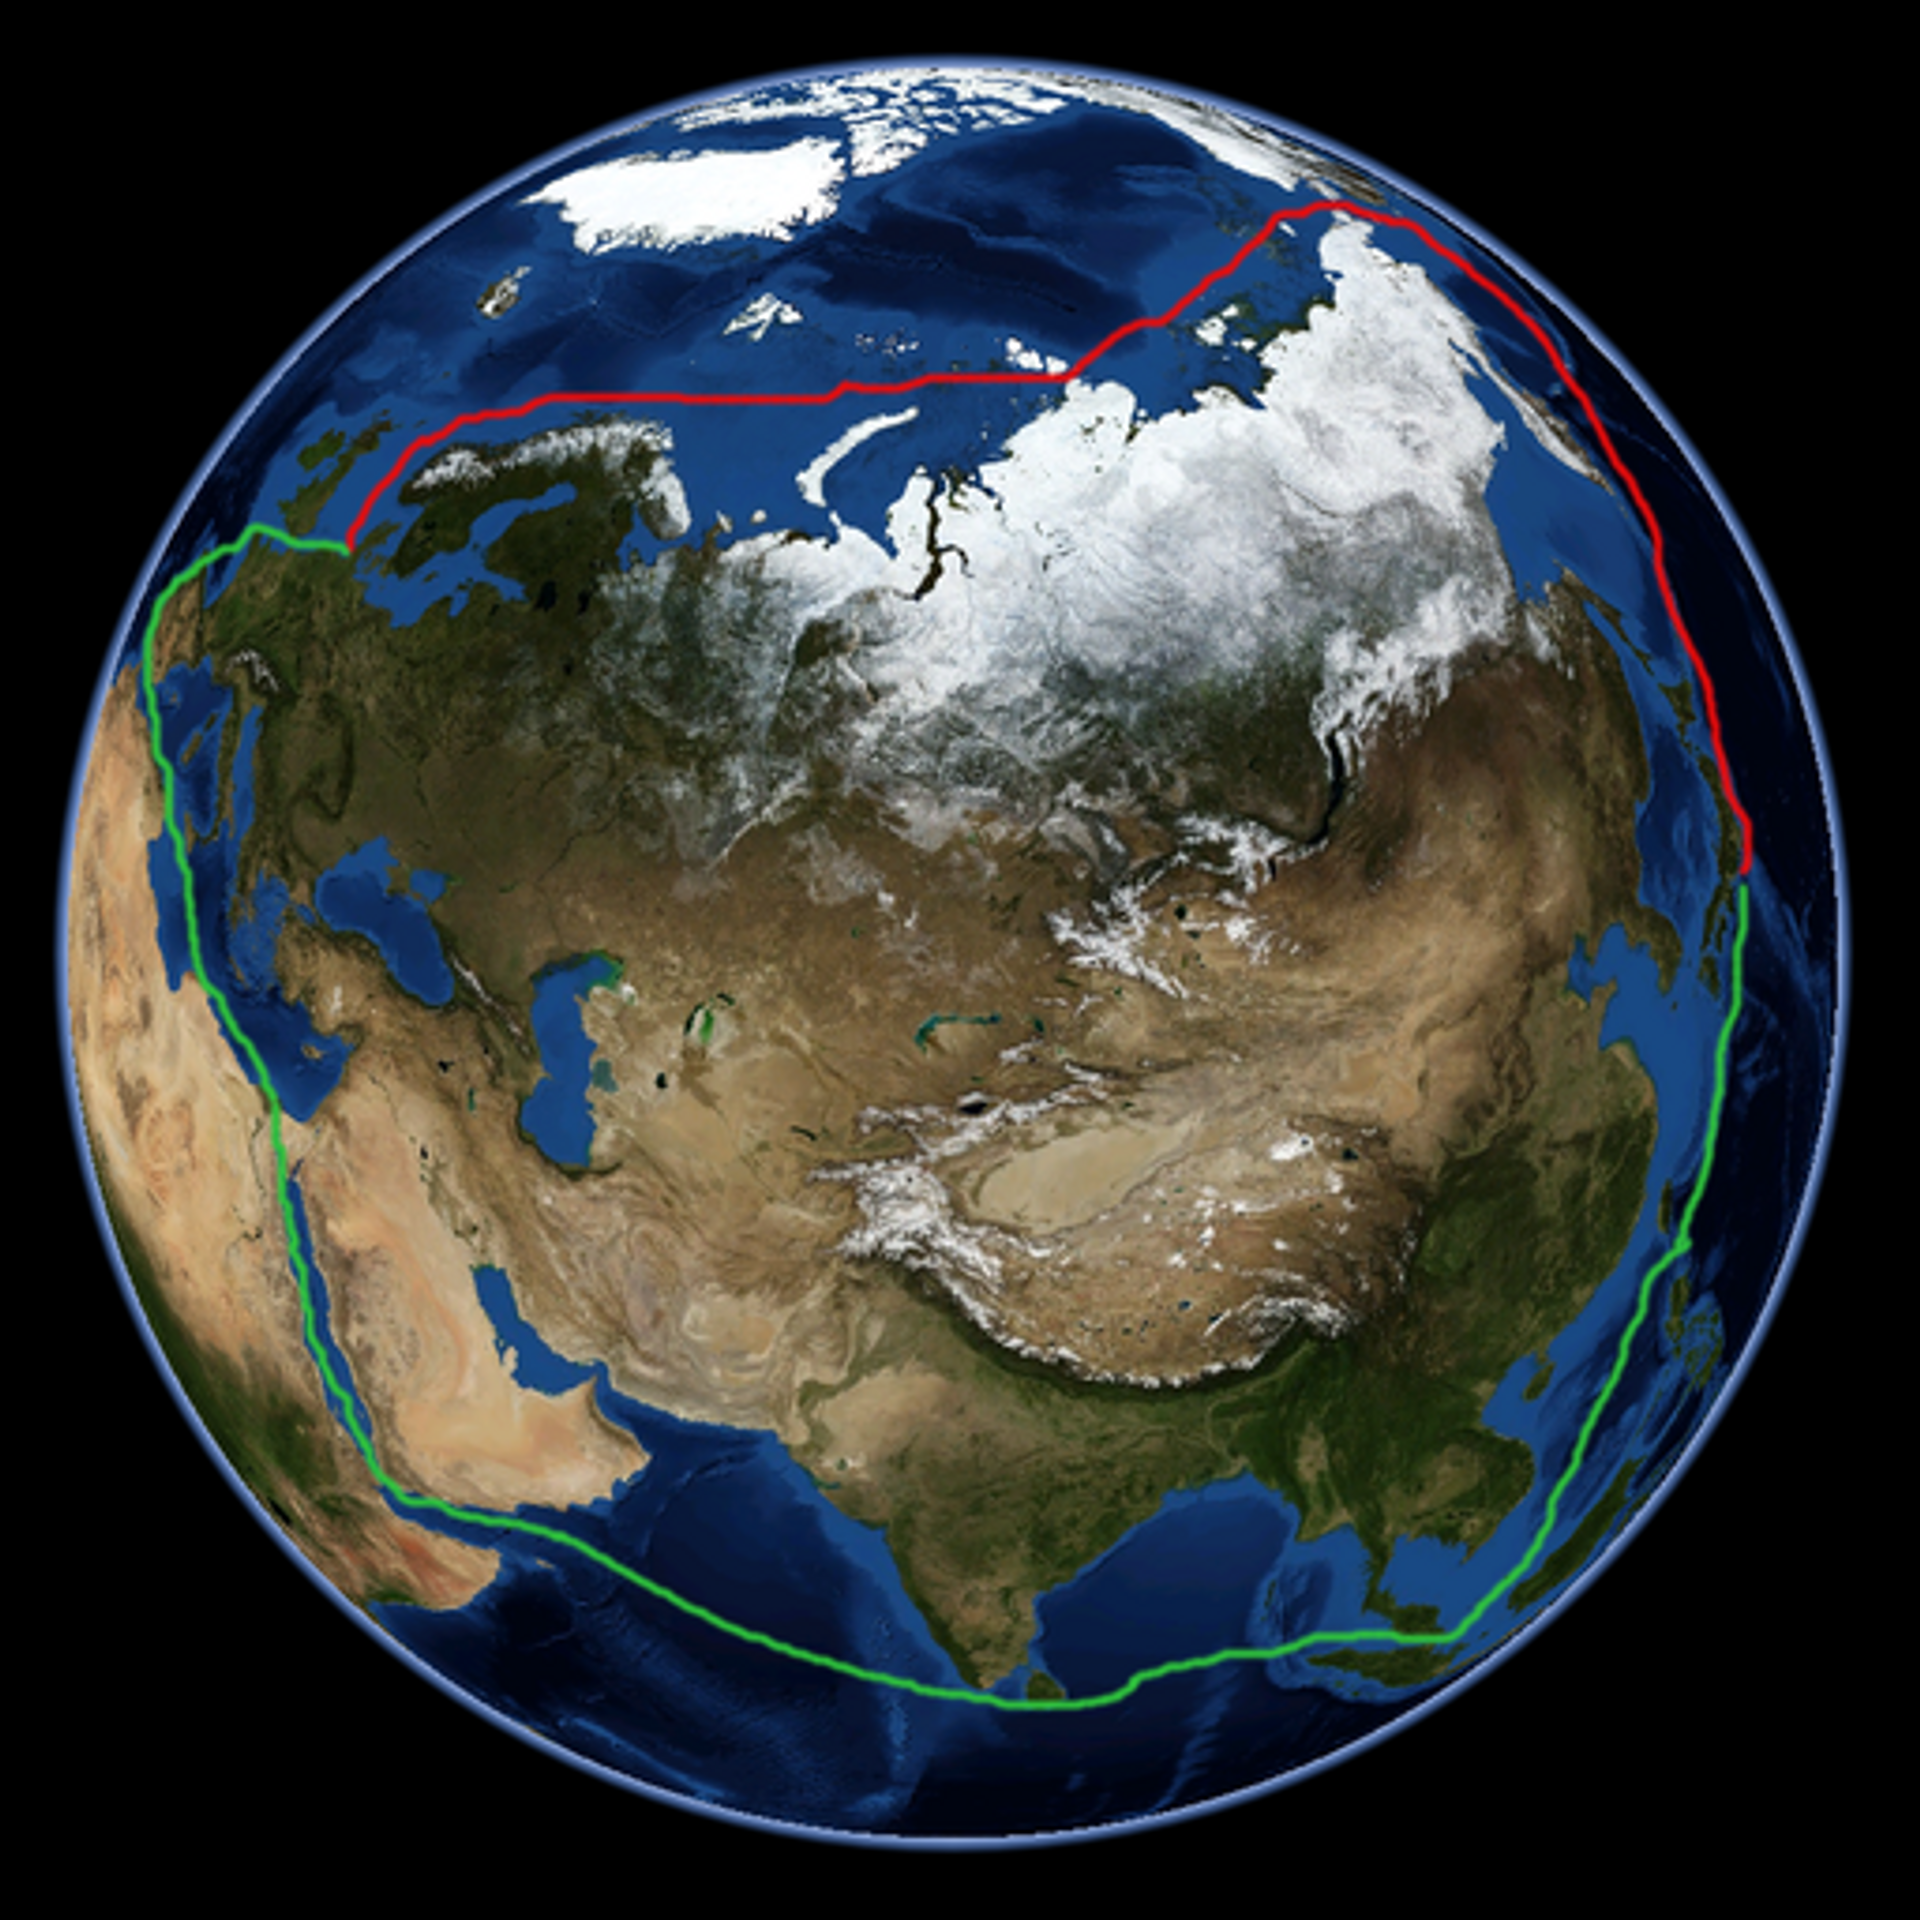 Como rota marítima no Ártico russo pode se tornar 'centro das atividades' do transporte global? - Sputnik Brasil, 1920, 01.04.2021